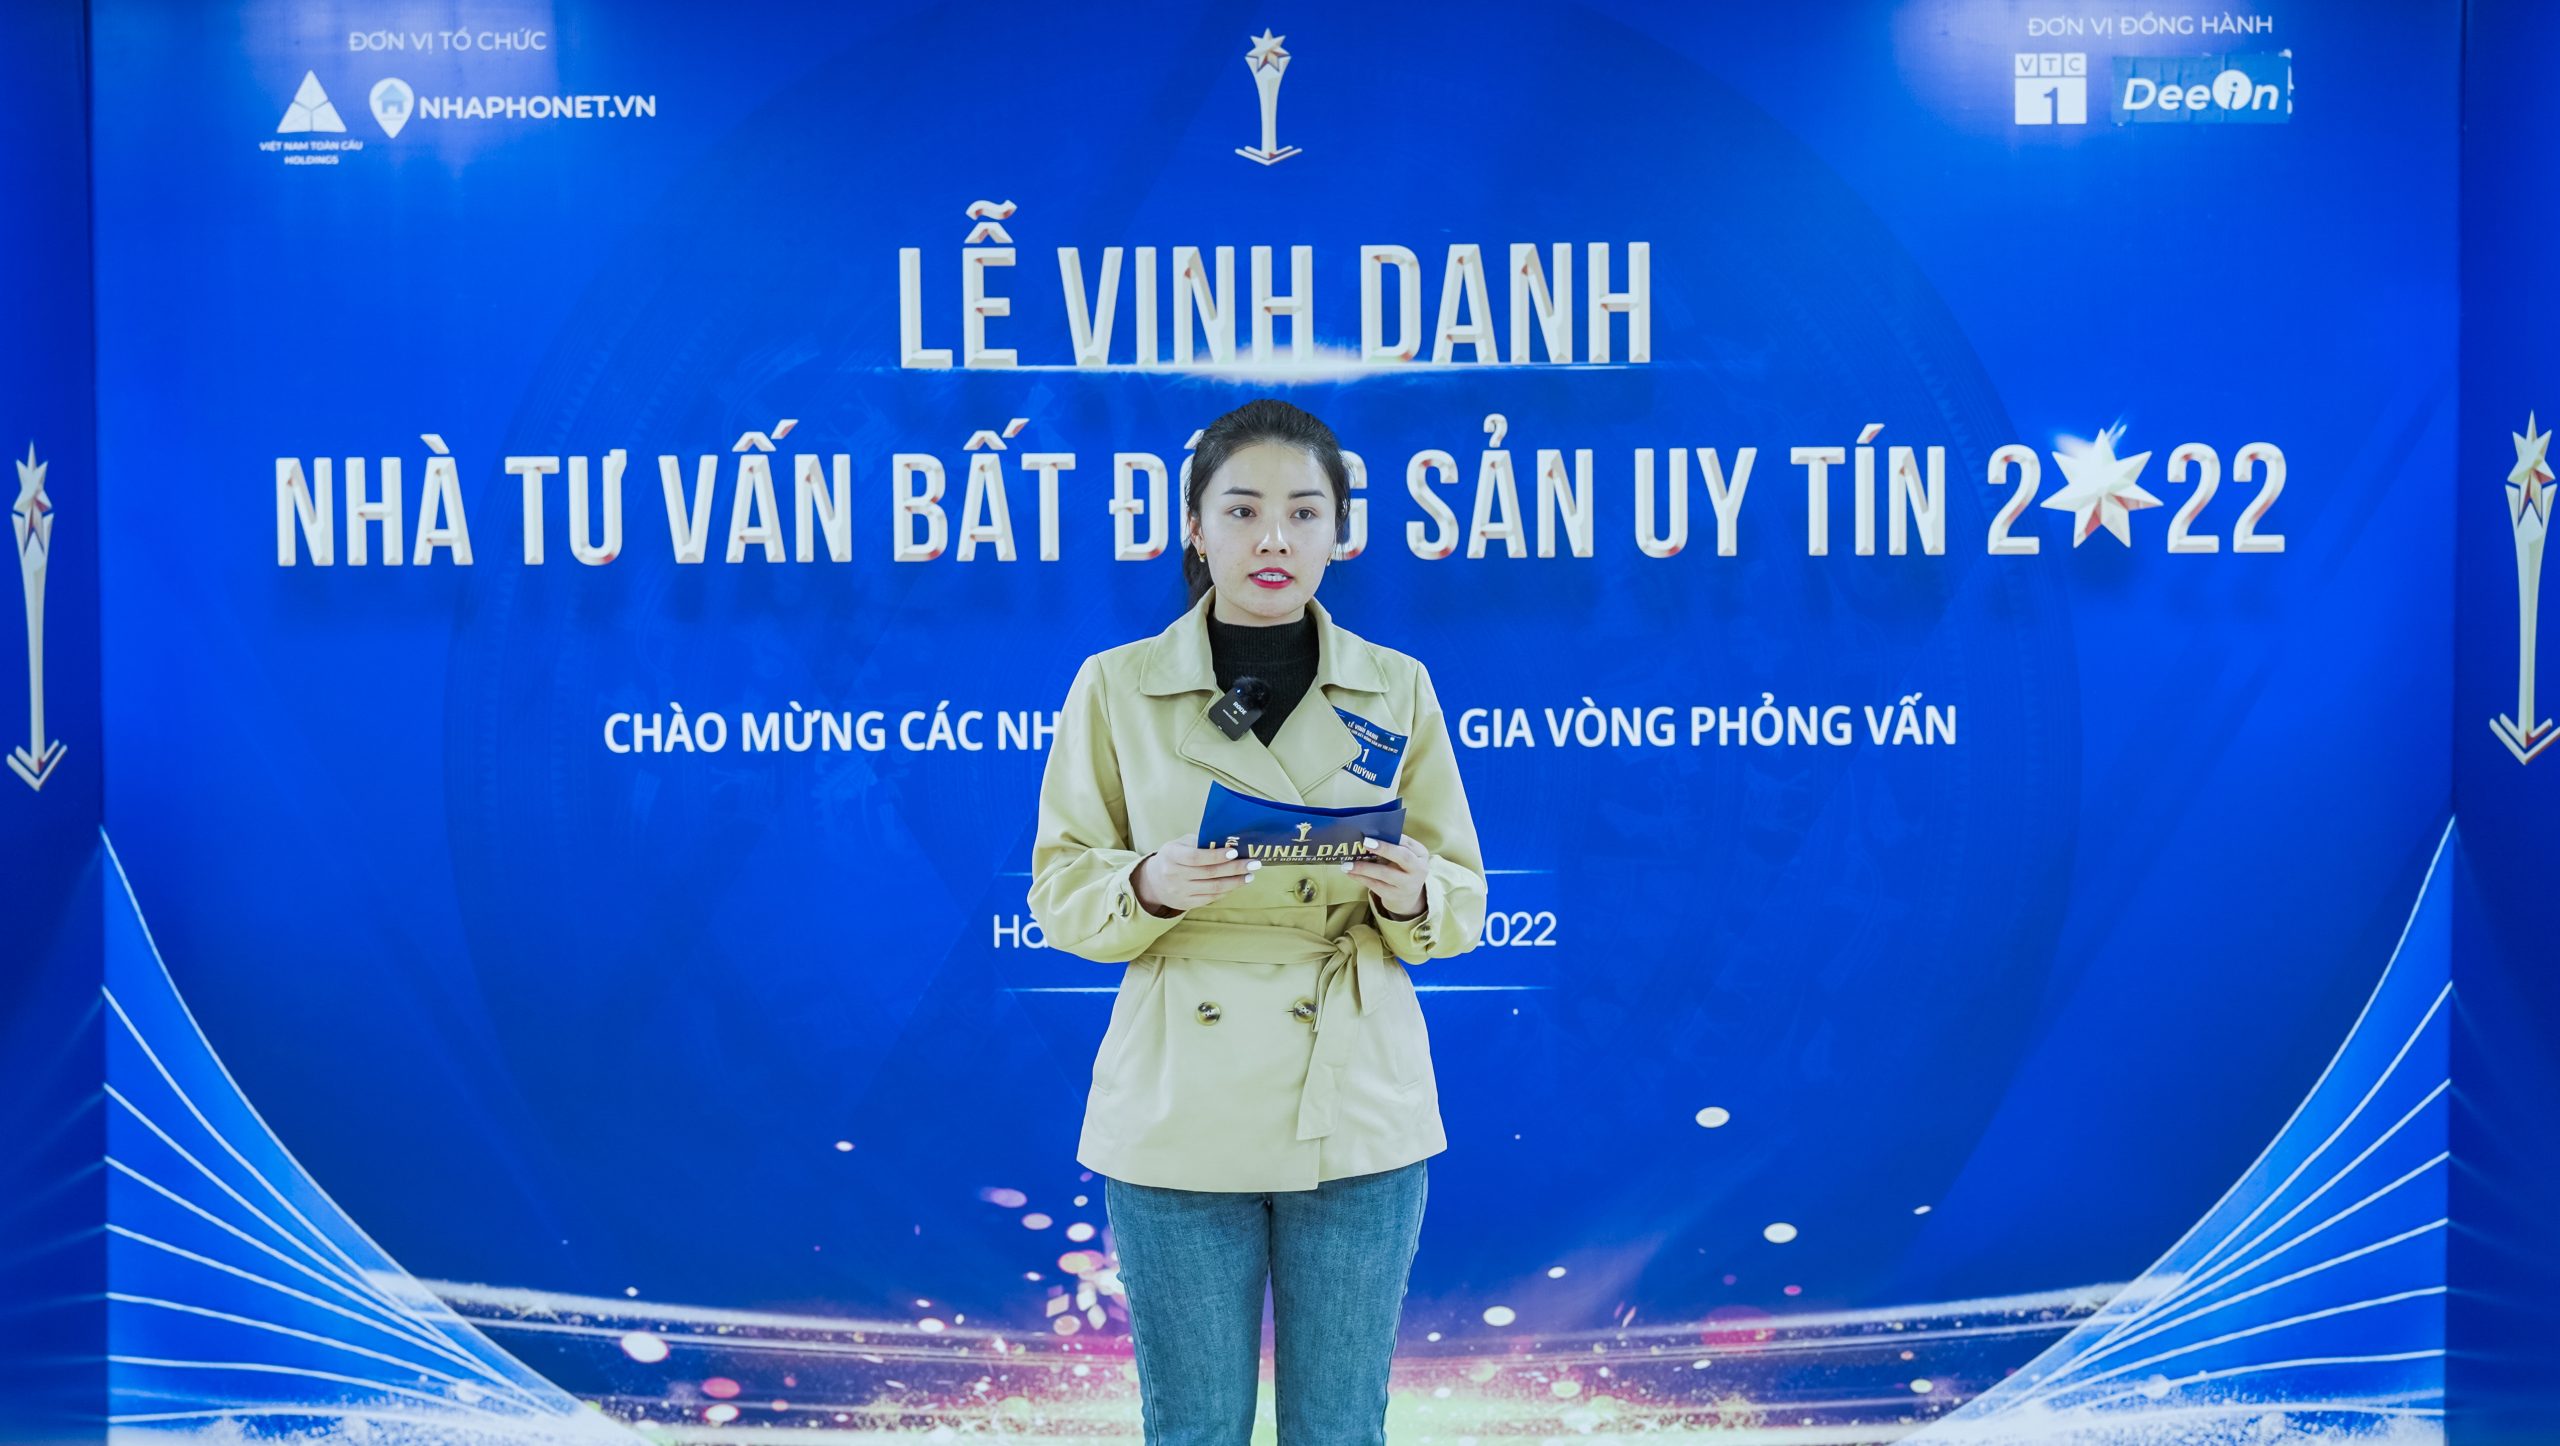 le vinh danh nha moi gioi bat dong san uy tin 2022 (6)